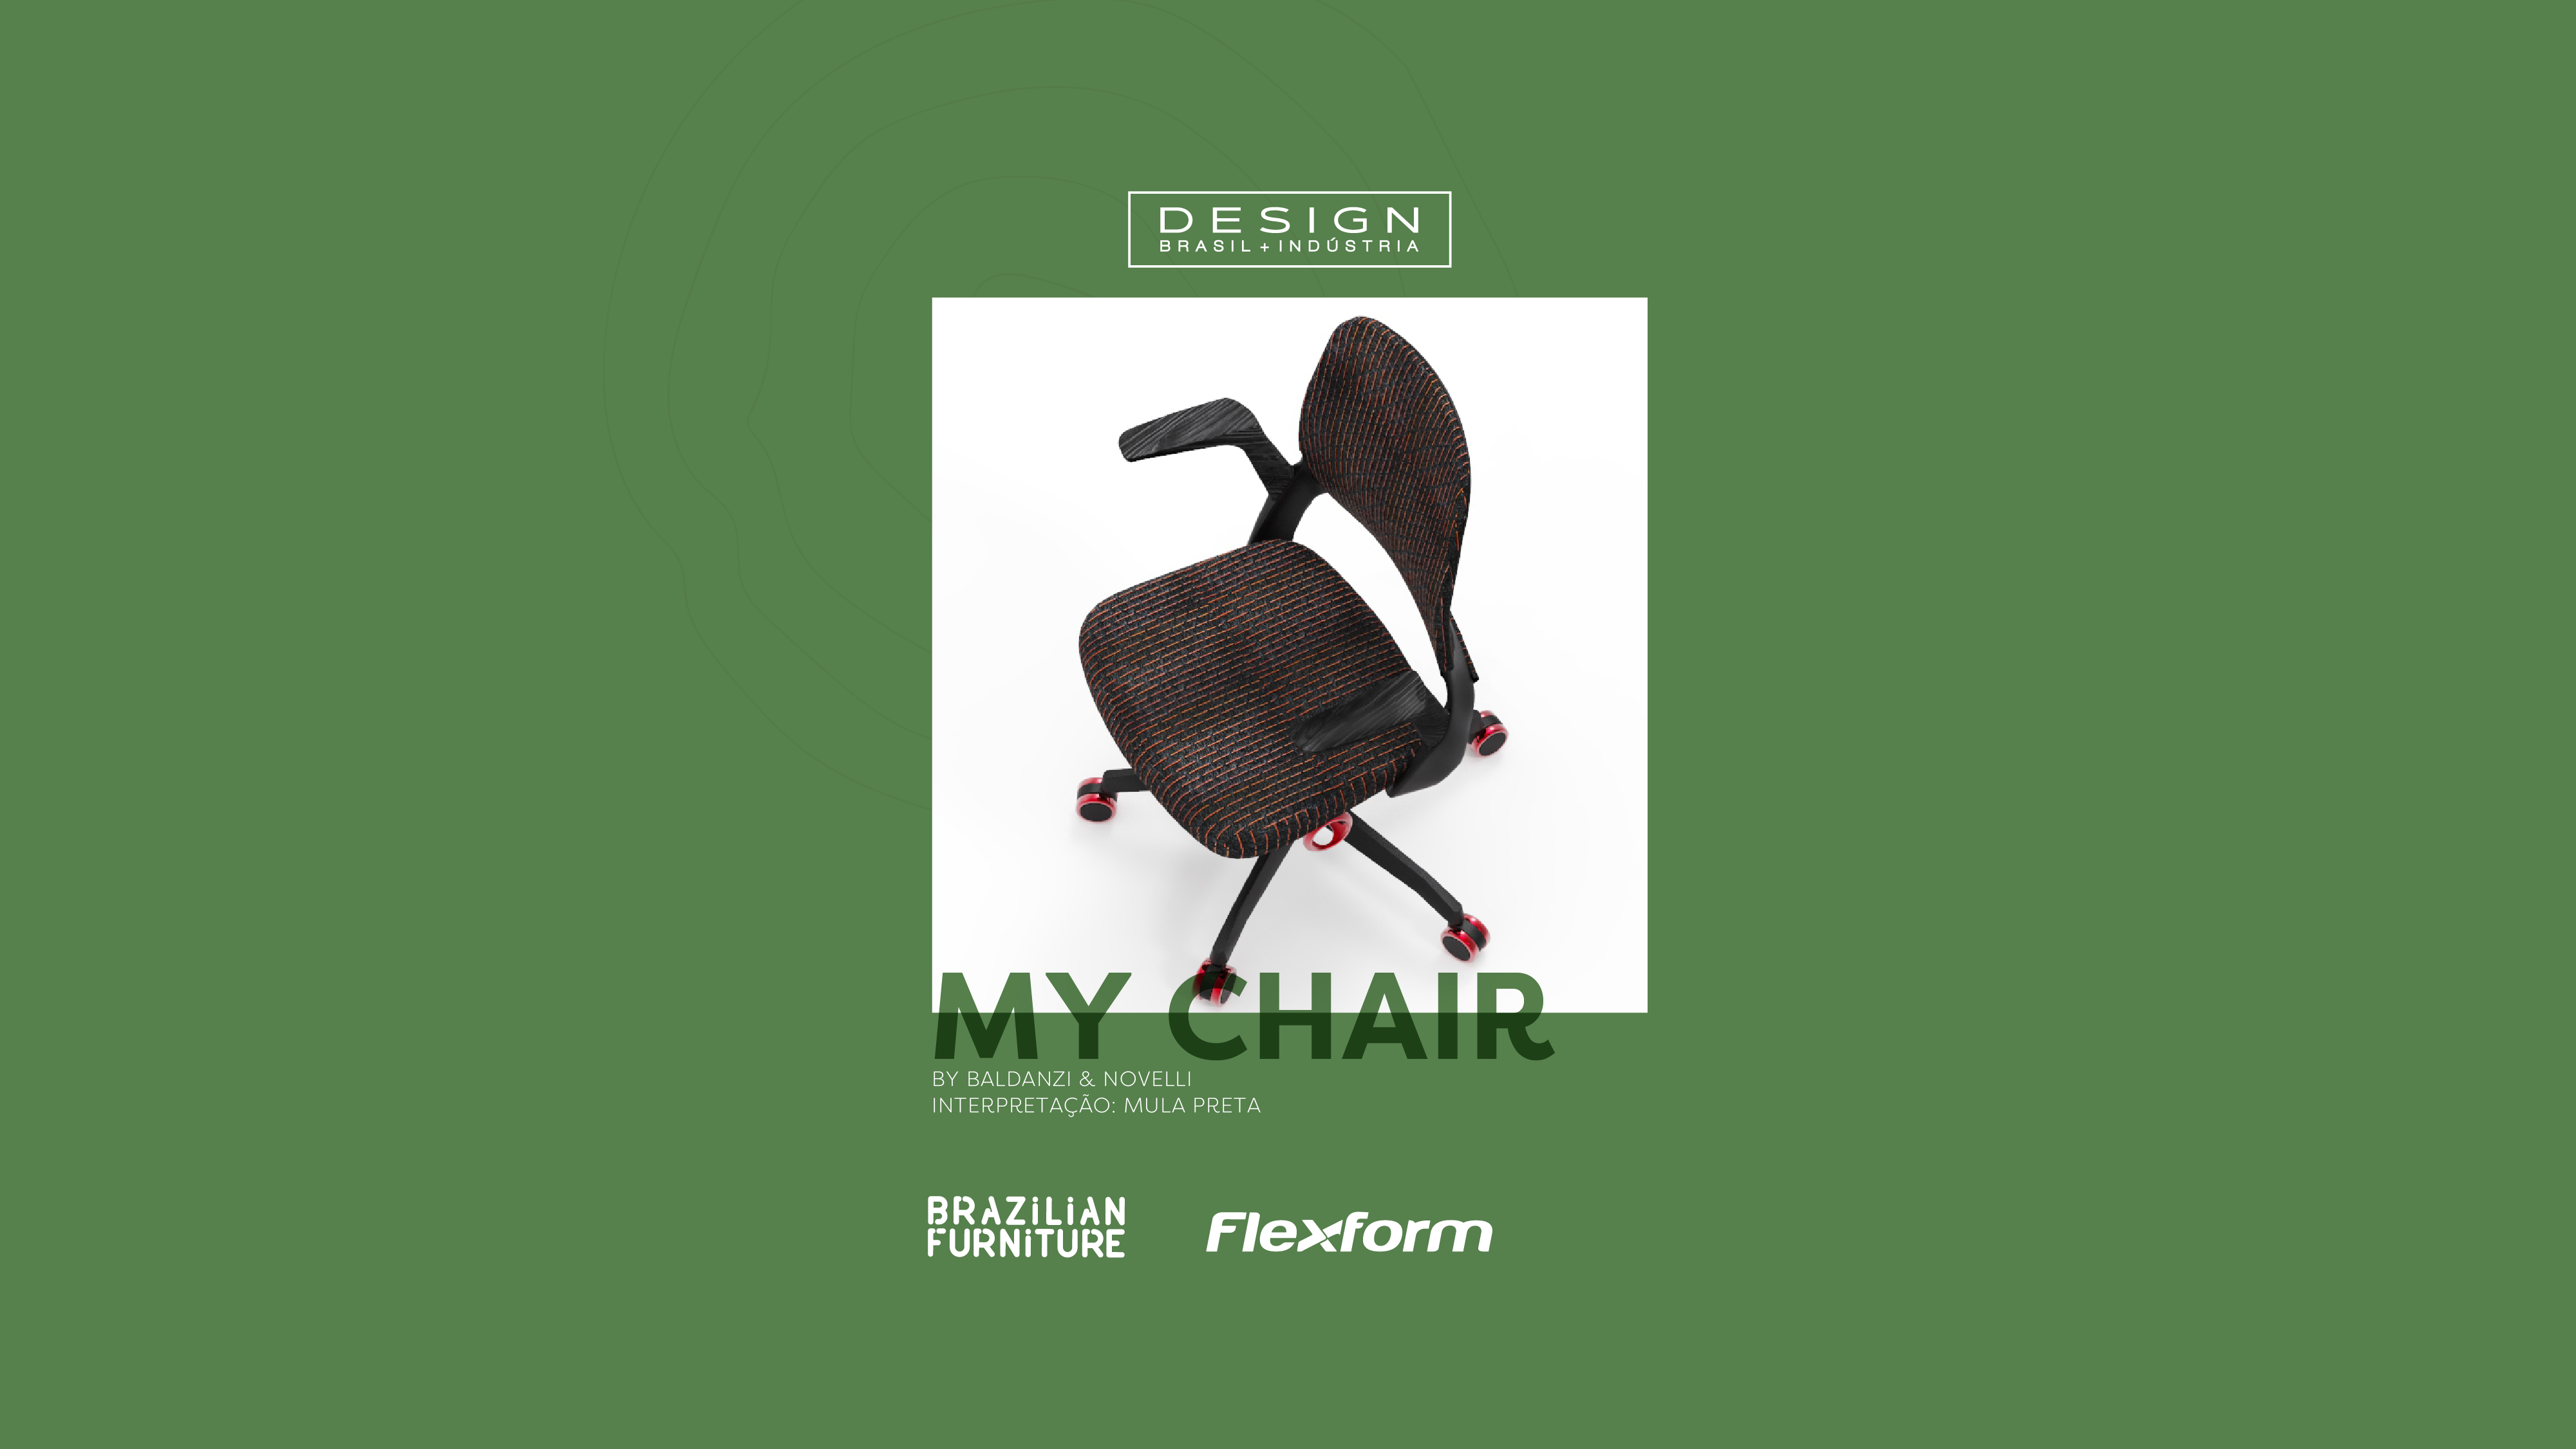 FlexForm e Mula Preta: parceria inovadora na releitura da ‘My Chair’ para o Design + Indústria